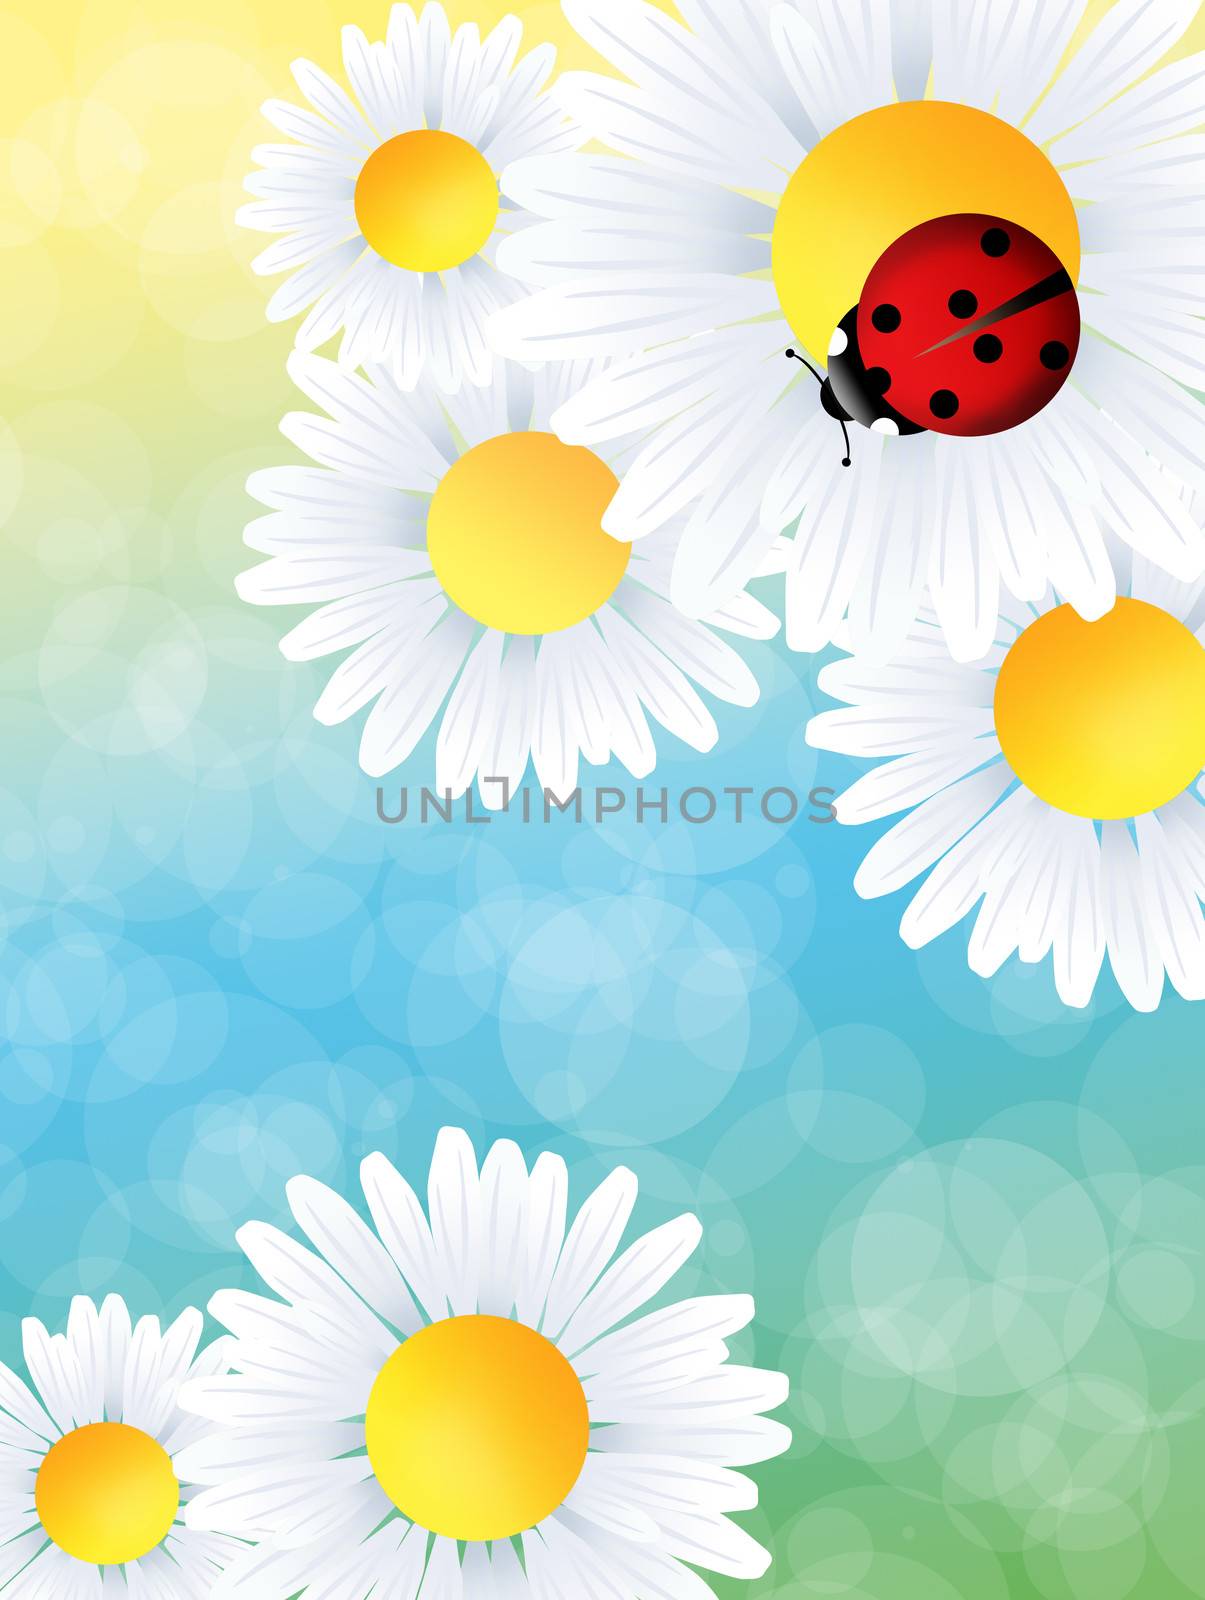 Ladybug on flower by adrenalina